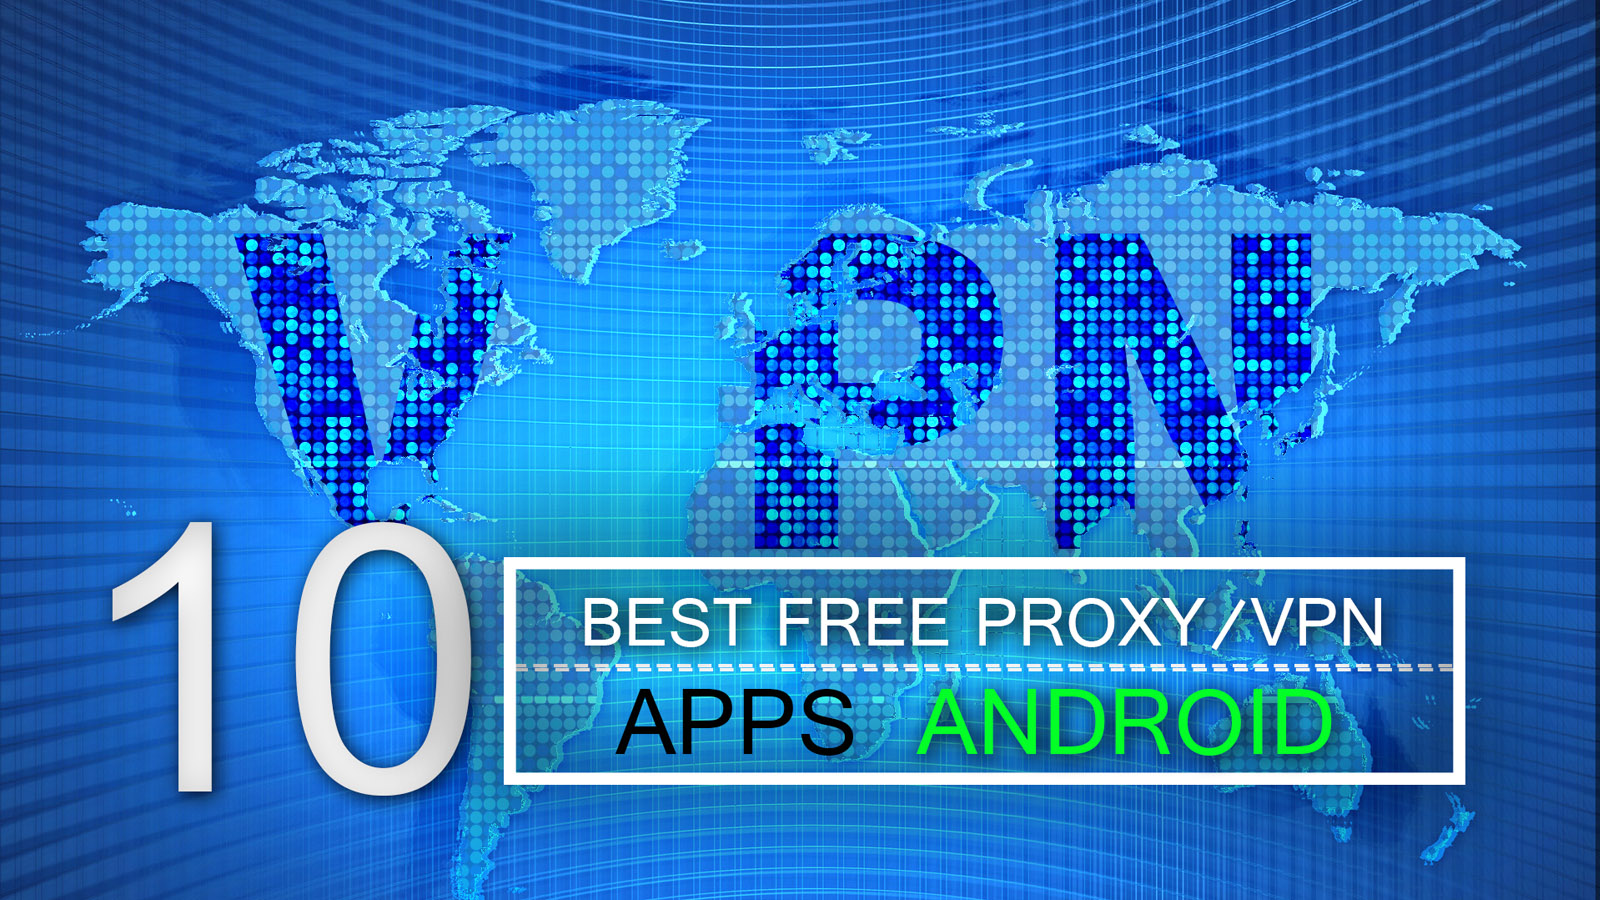 Best Free Proxy/VPN Apps